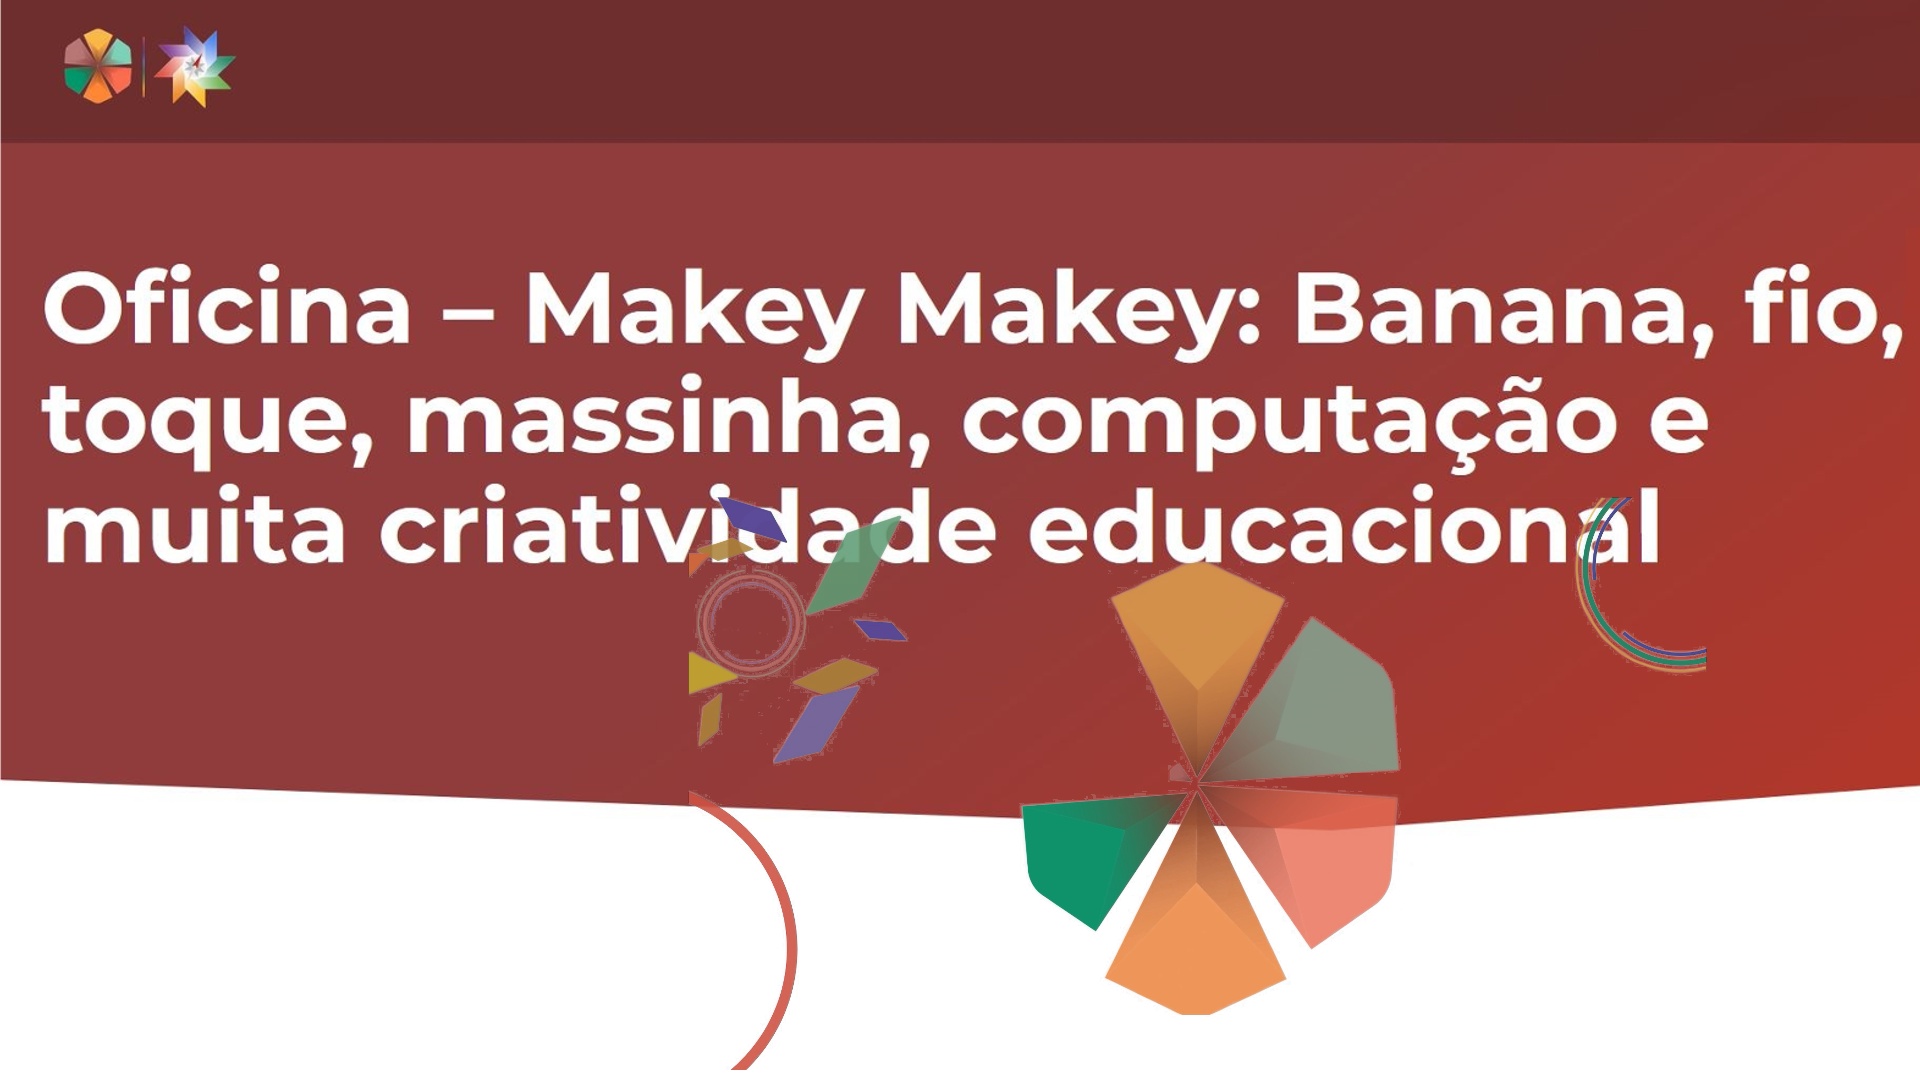 Oficina Makey Makey: Banana, fio, toque, massinha, computação e muita criatividade educacional - Presencial